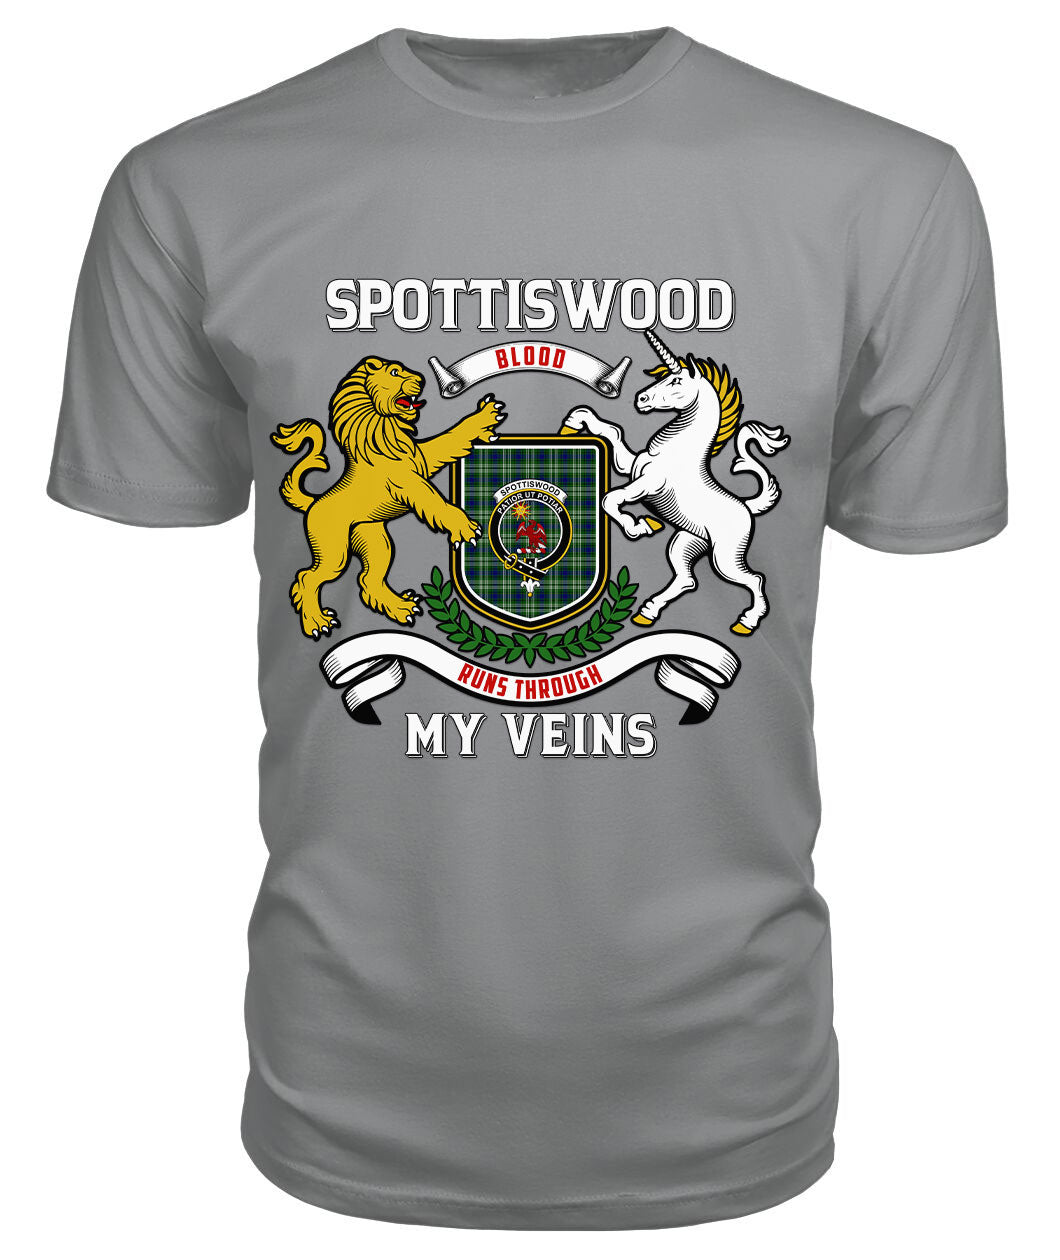 Spottiswood Tartan Crest 2D T-shirt - Blood Runs Through My Veins Style